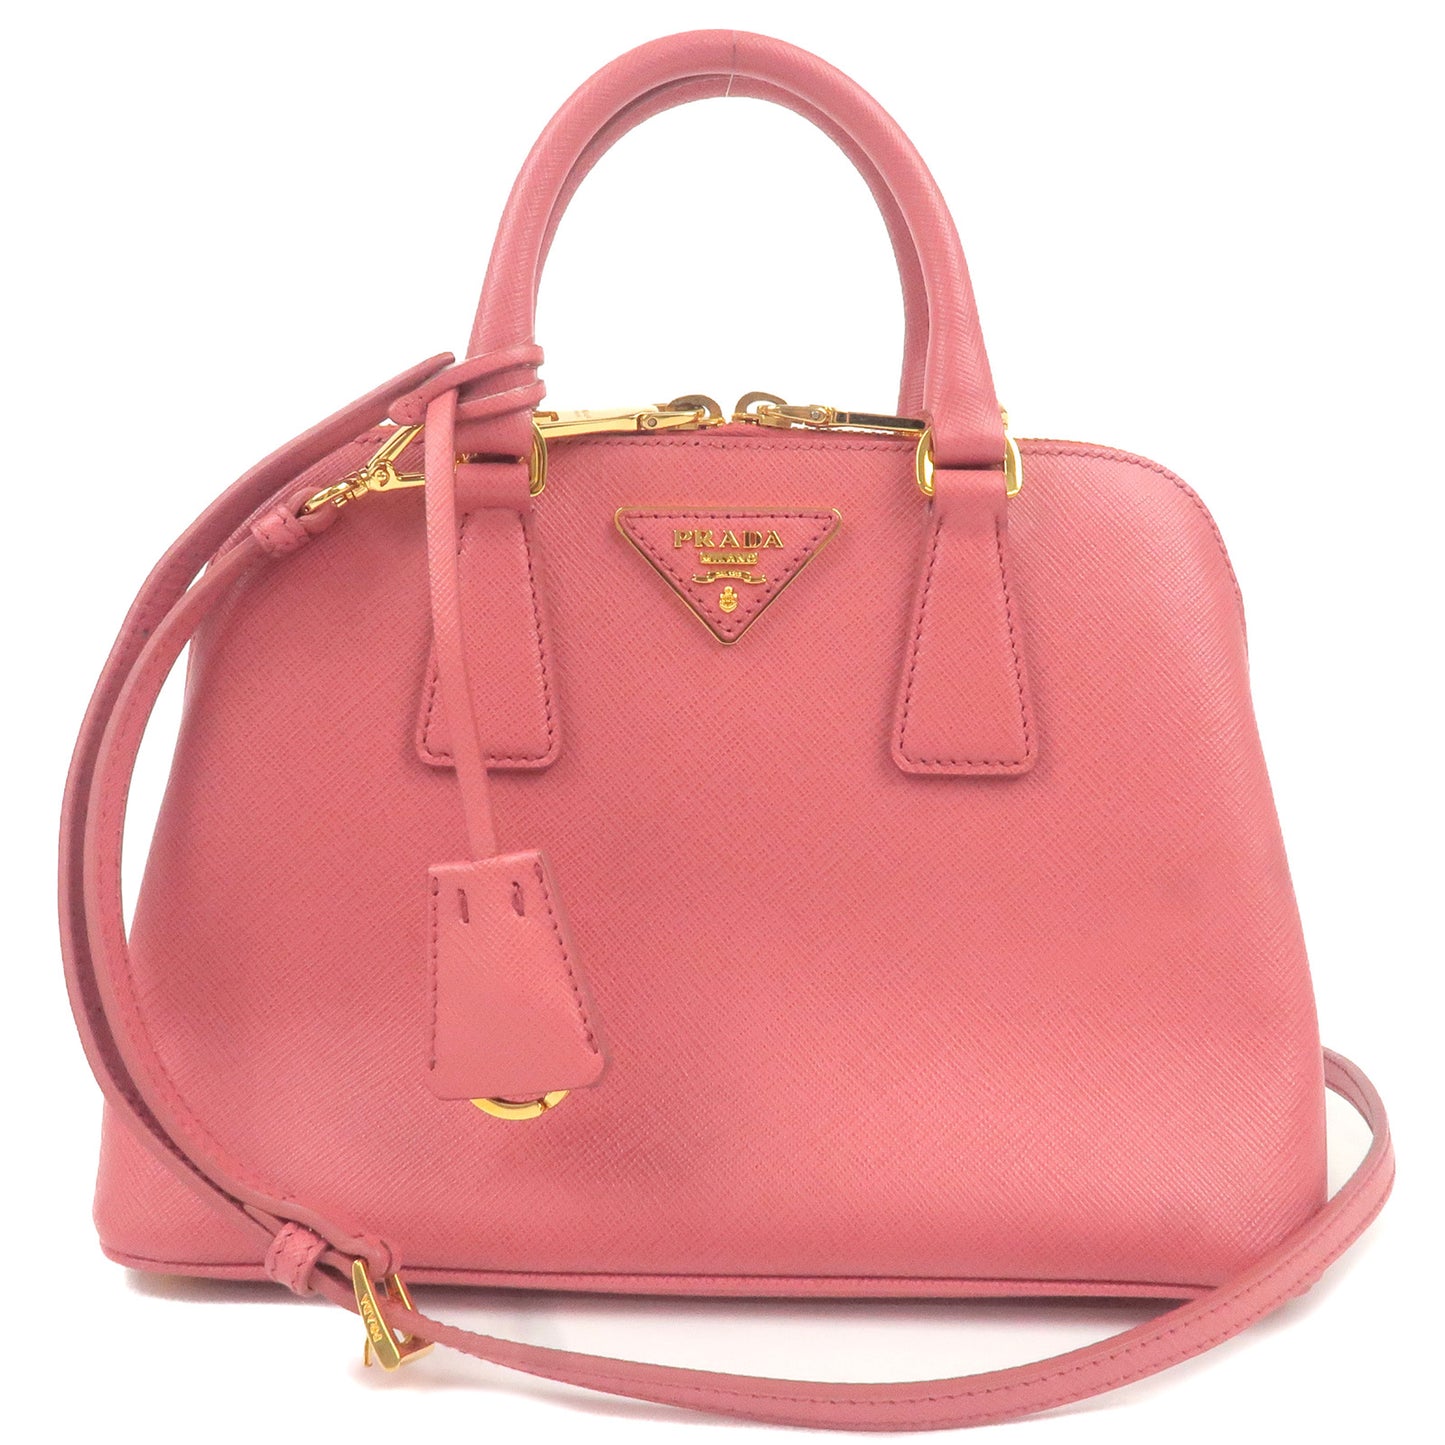 PRADA-Leather-2Way-Hand-Bag-Shoulder-Bag-Pink-BL0838